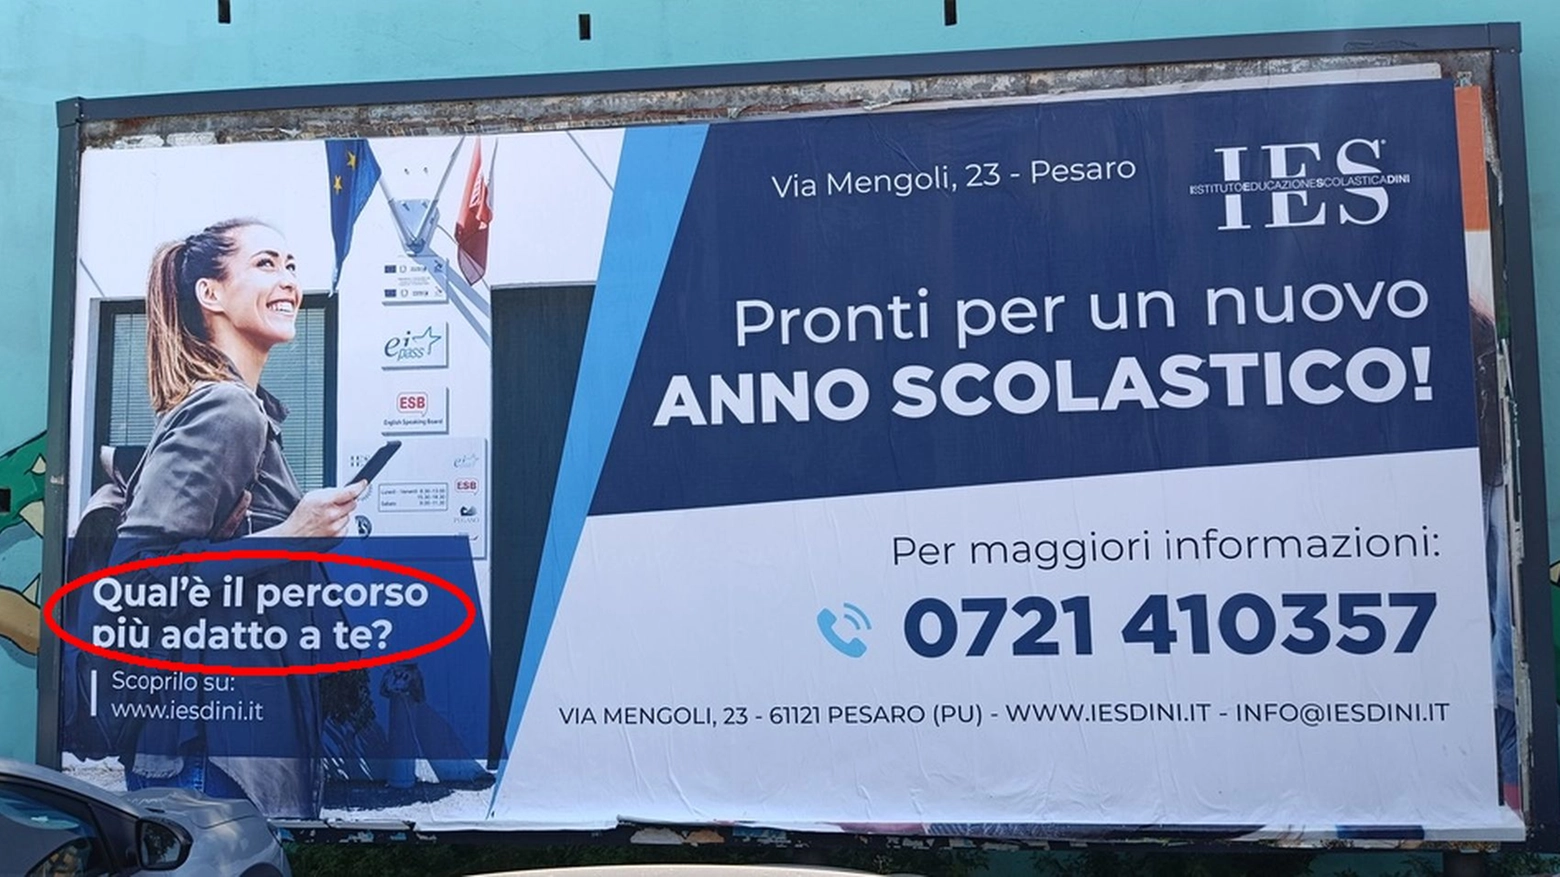 Il cartellone con l’errore grammaticale in via La Marca a Pesaro